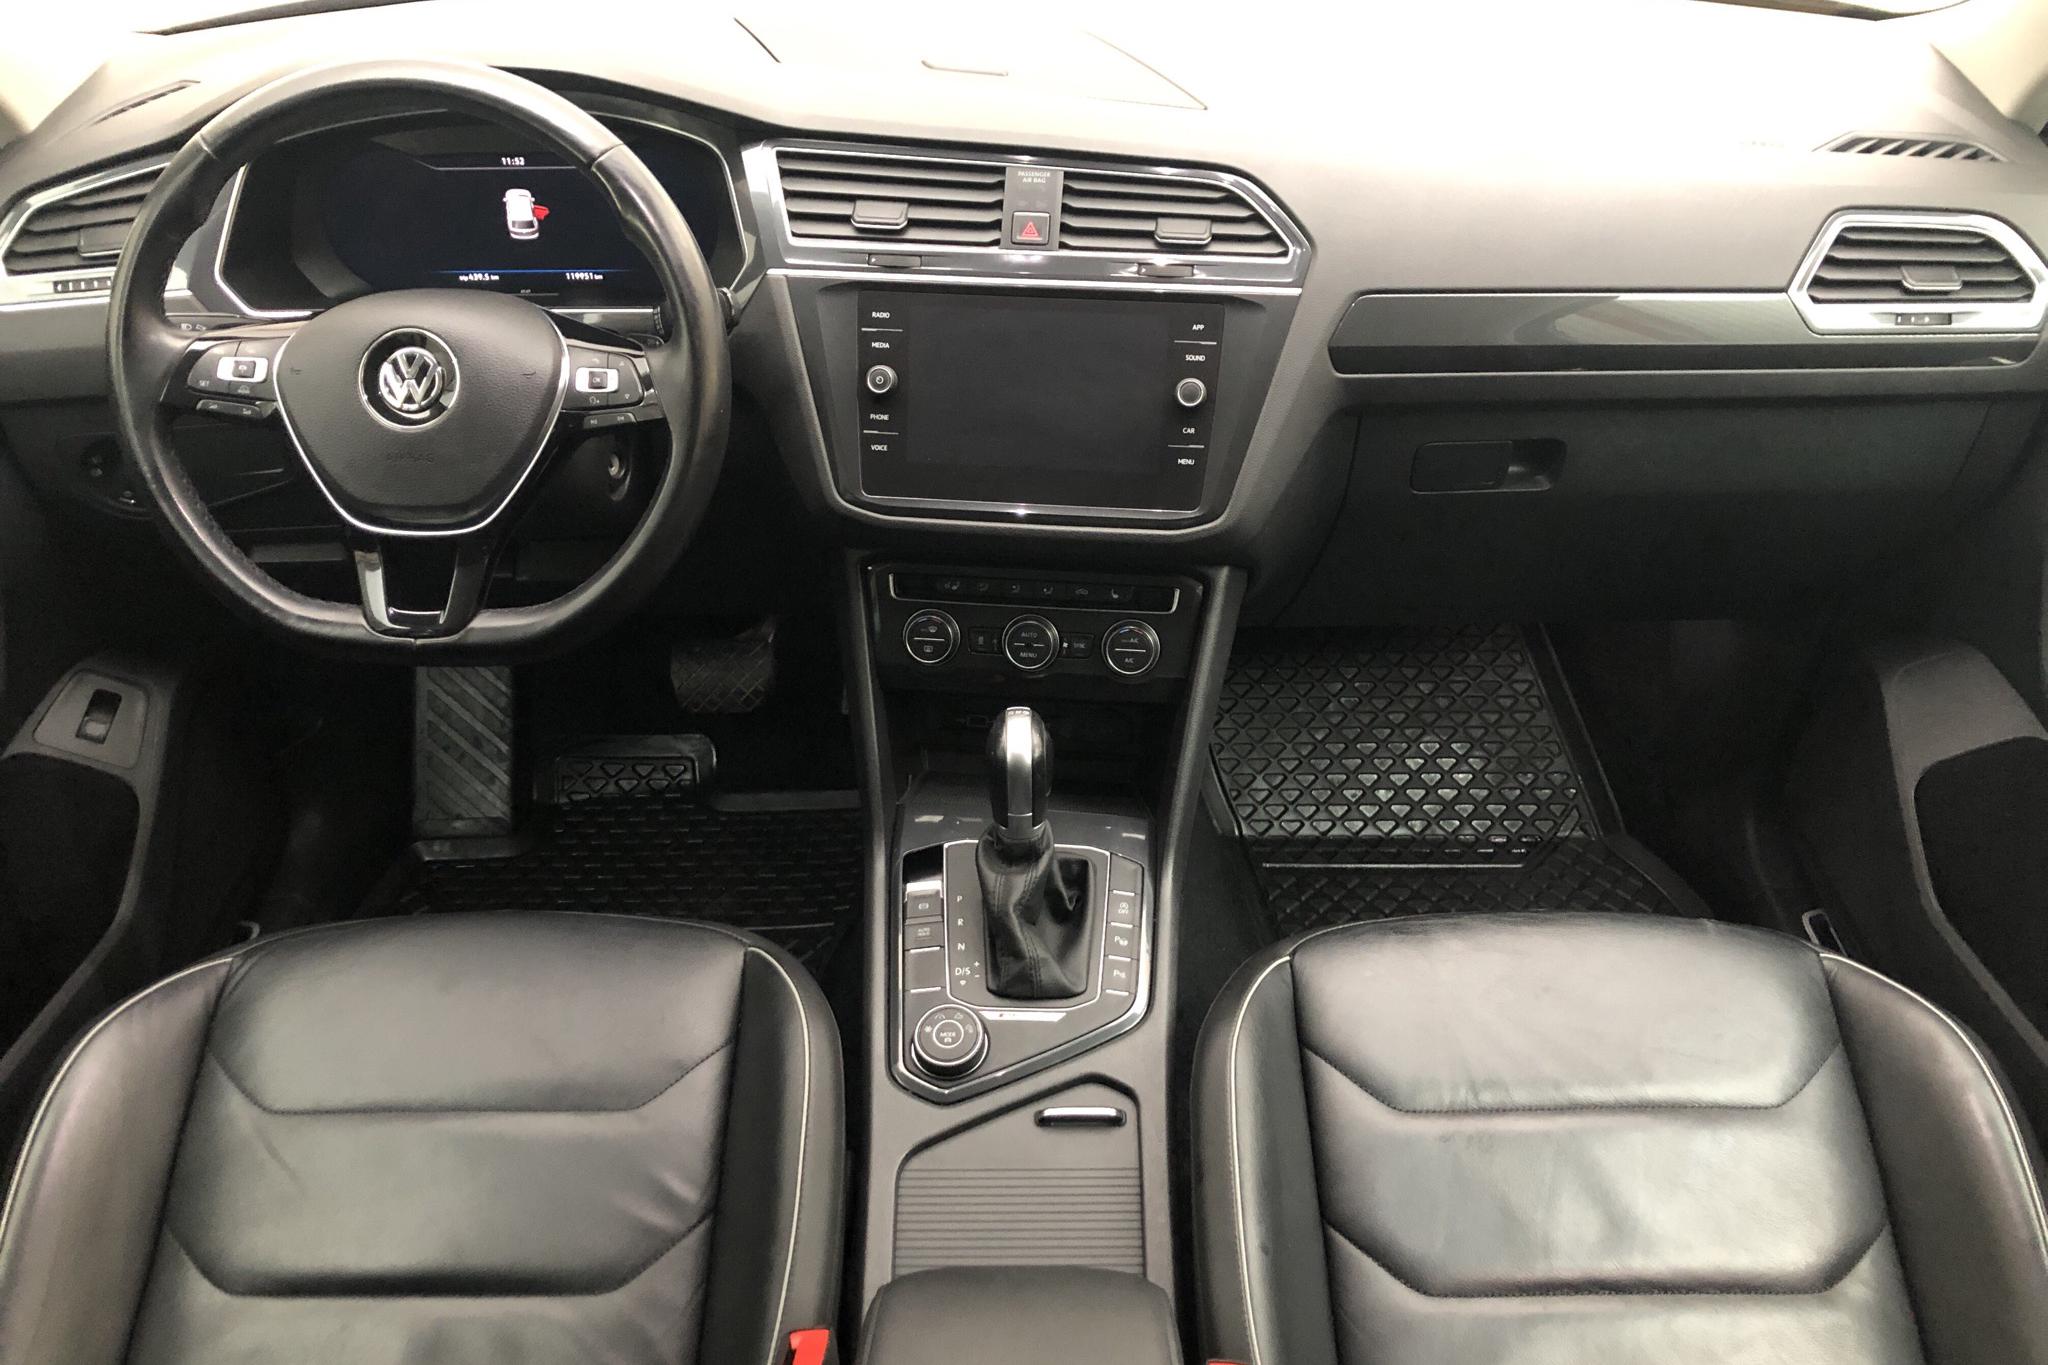 VW Tiguan 2.0 TDI 4MOTION (190hk) - 119 960 km - Automatic - black - 2018